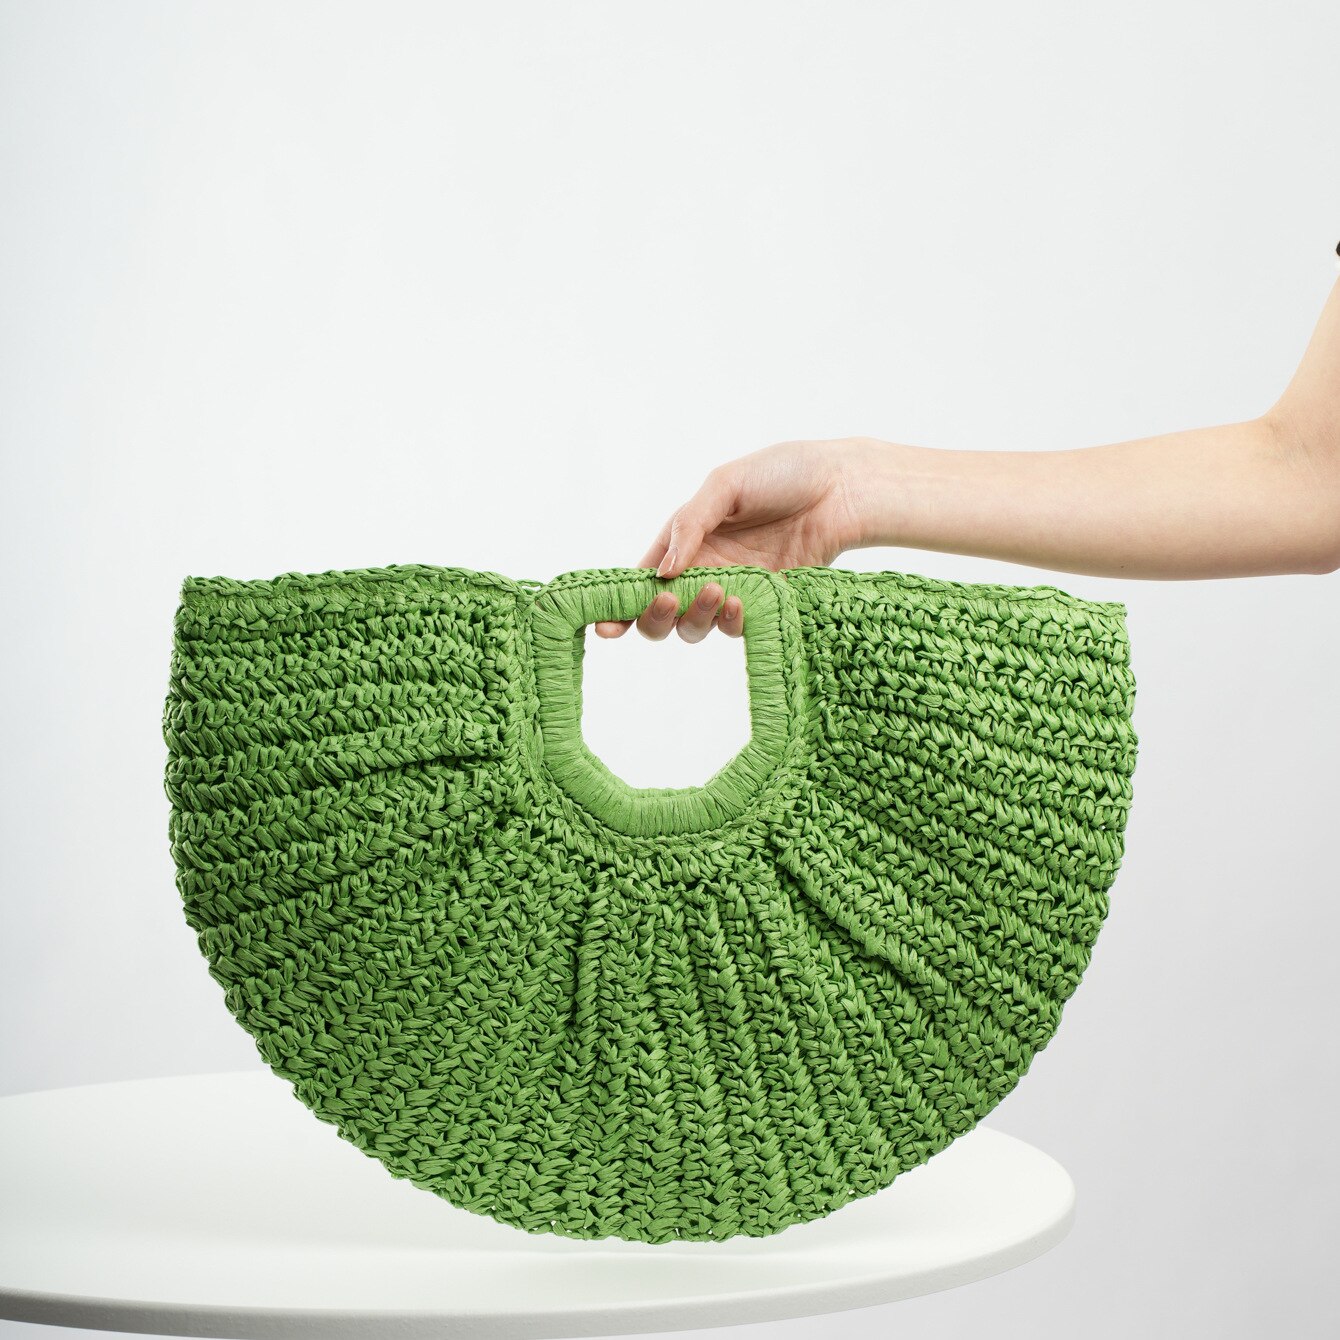 TEEK - Woven Straw Moon Handbag BAG theteekdotcom green  